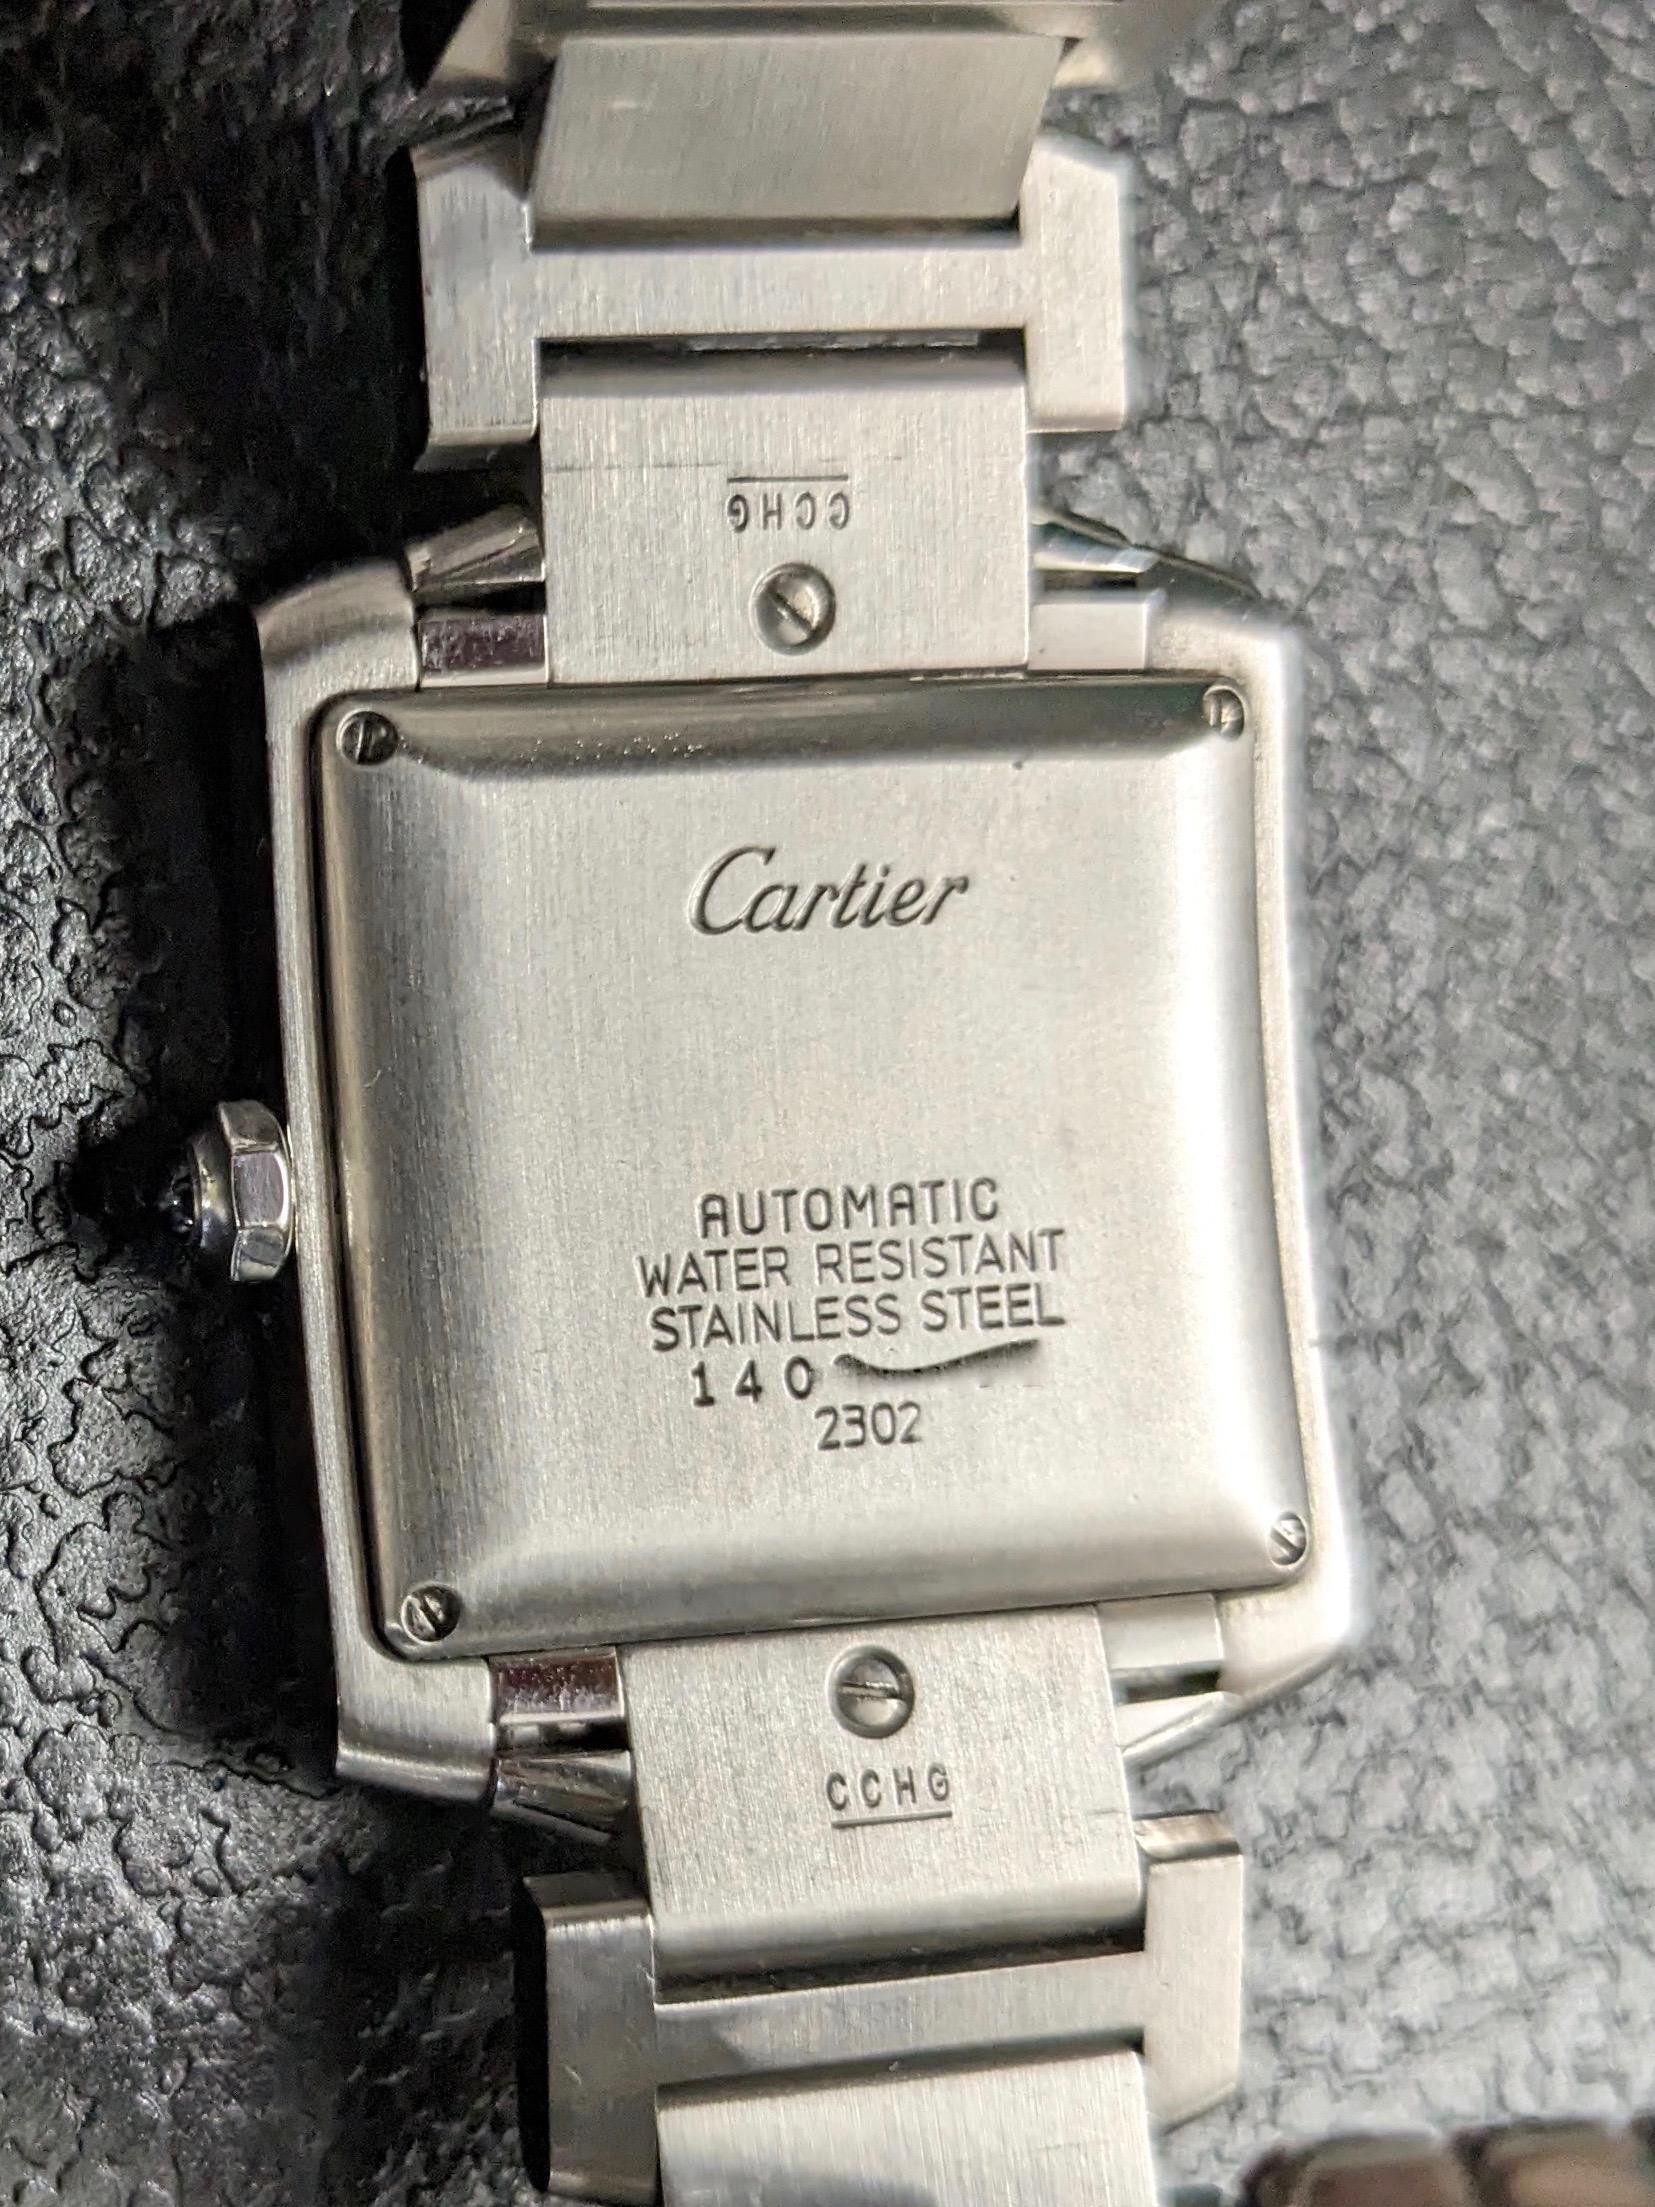 Orologio Cartier Tank Française Referenza 2302 1